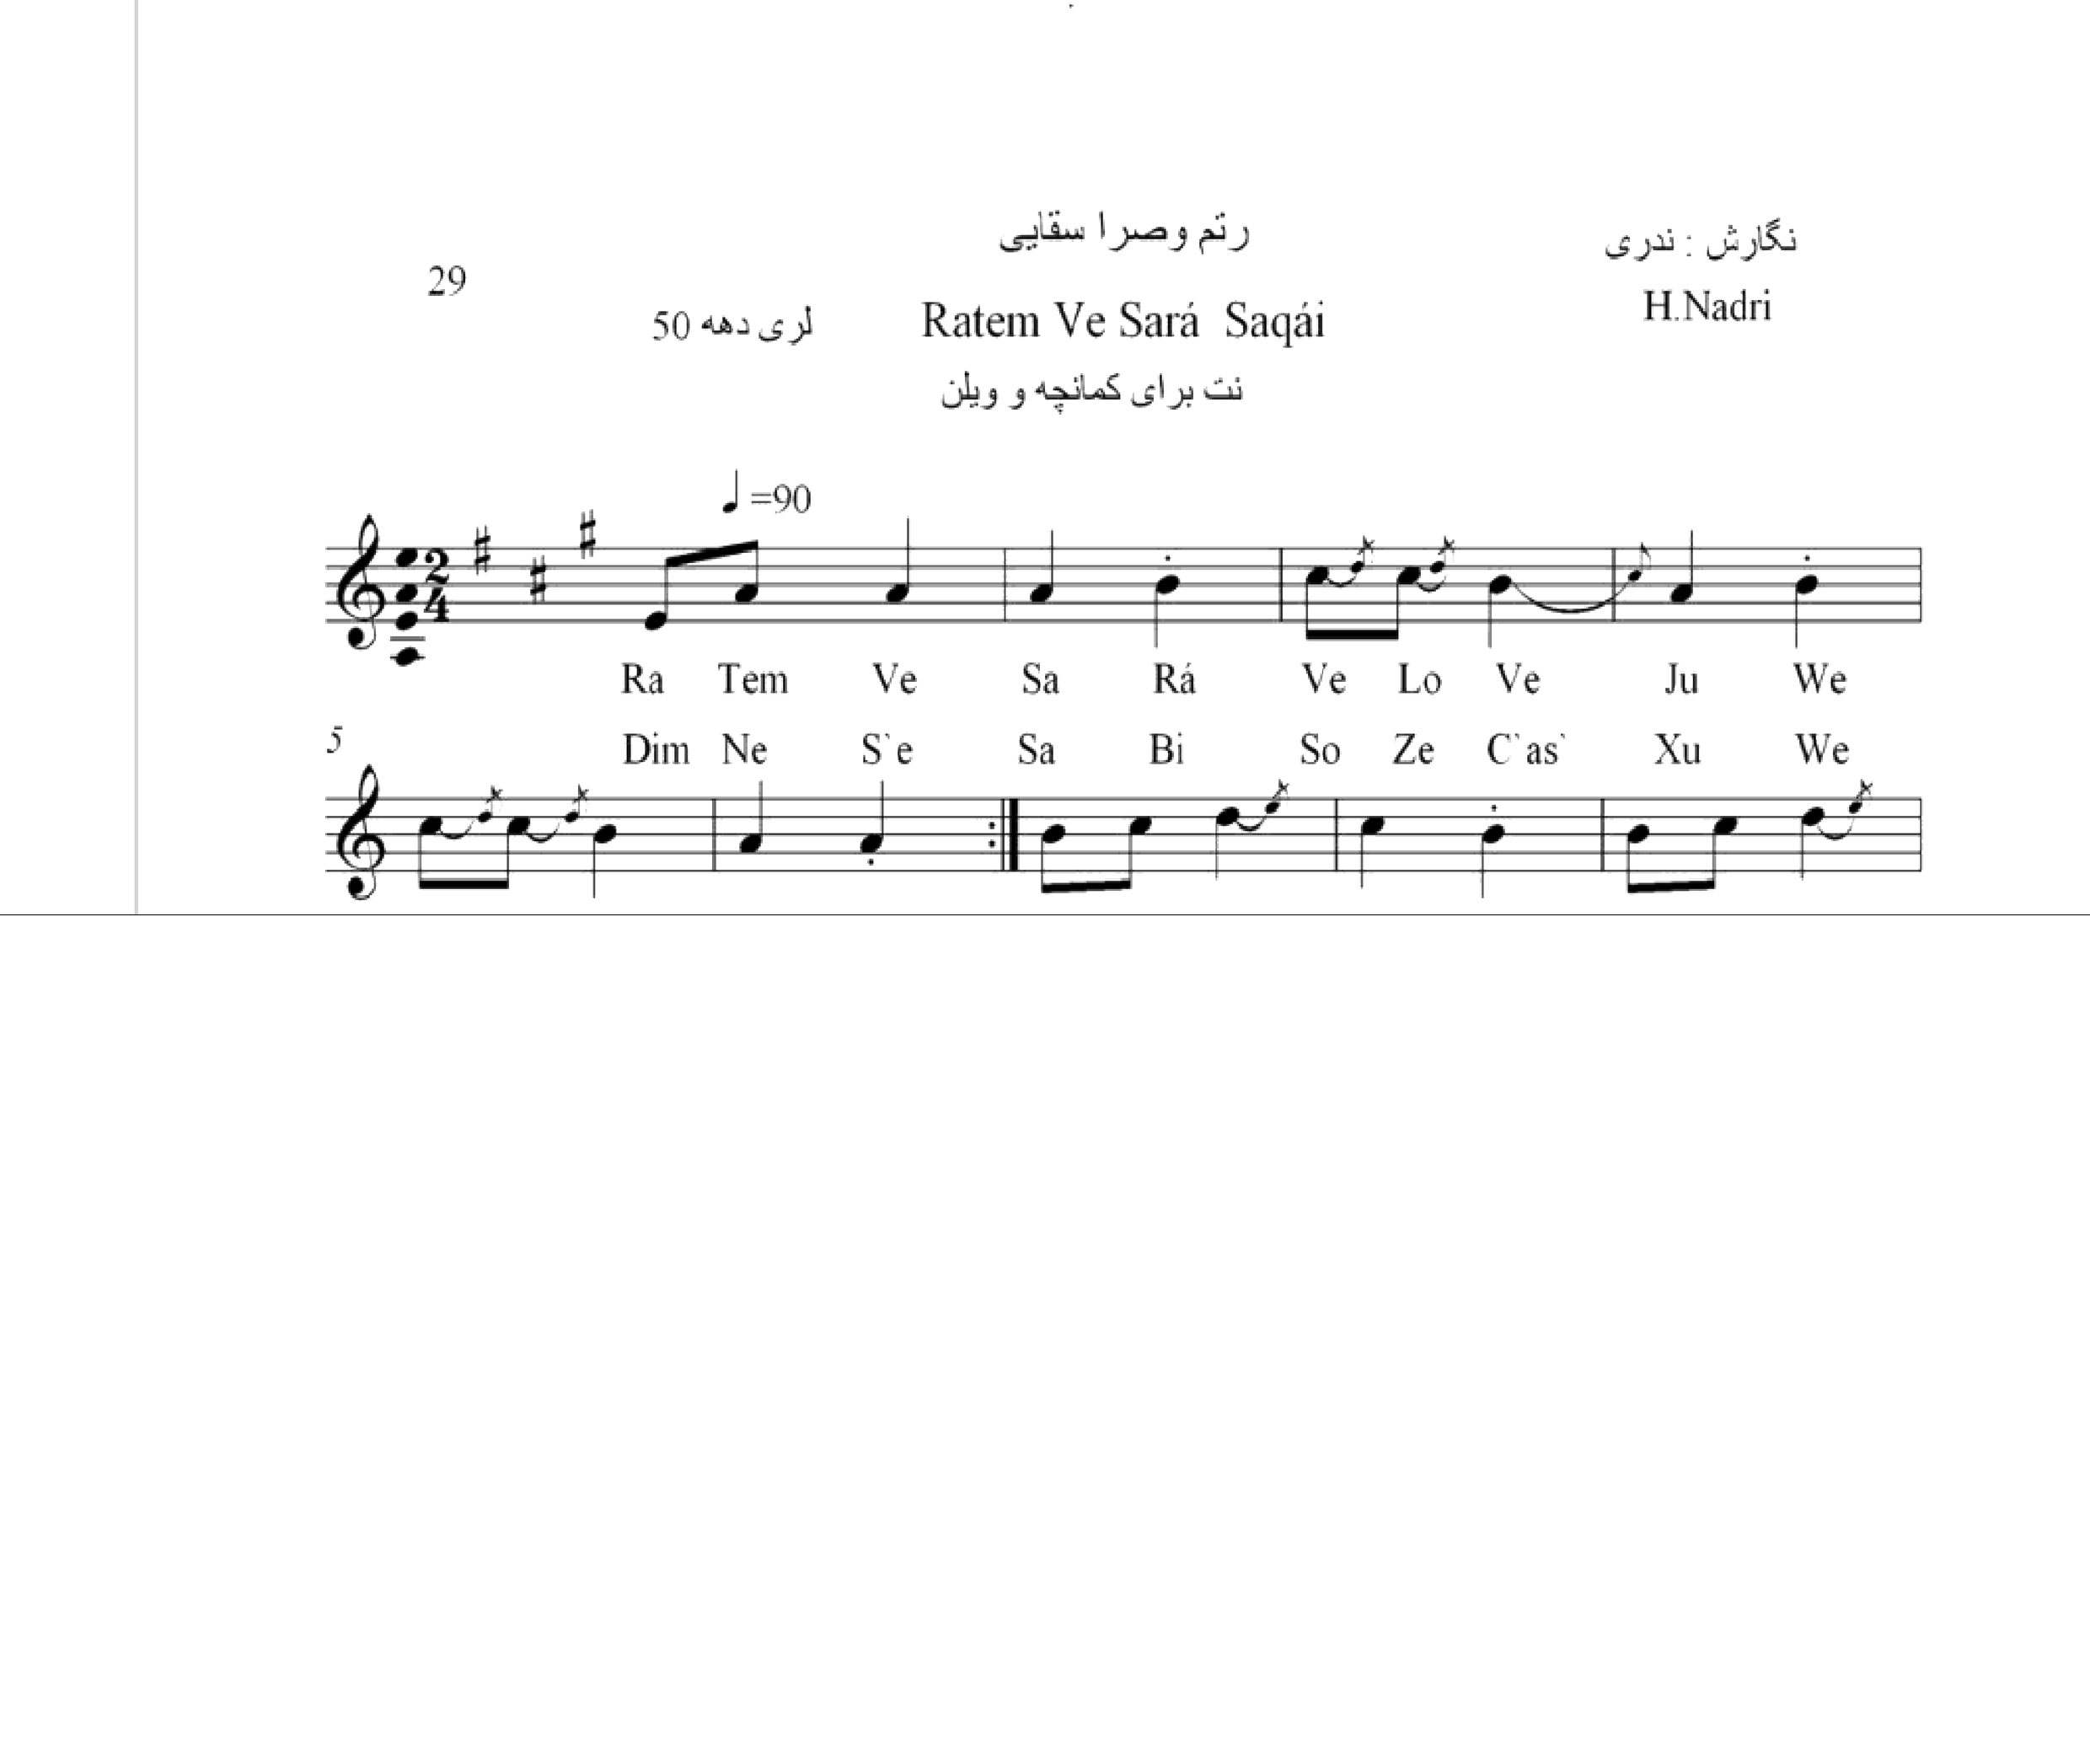 نت آهنگ رتم و صرا محلی لری حجت اله ندری قابل اجرا با کمانچه و دیگر سازها